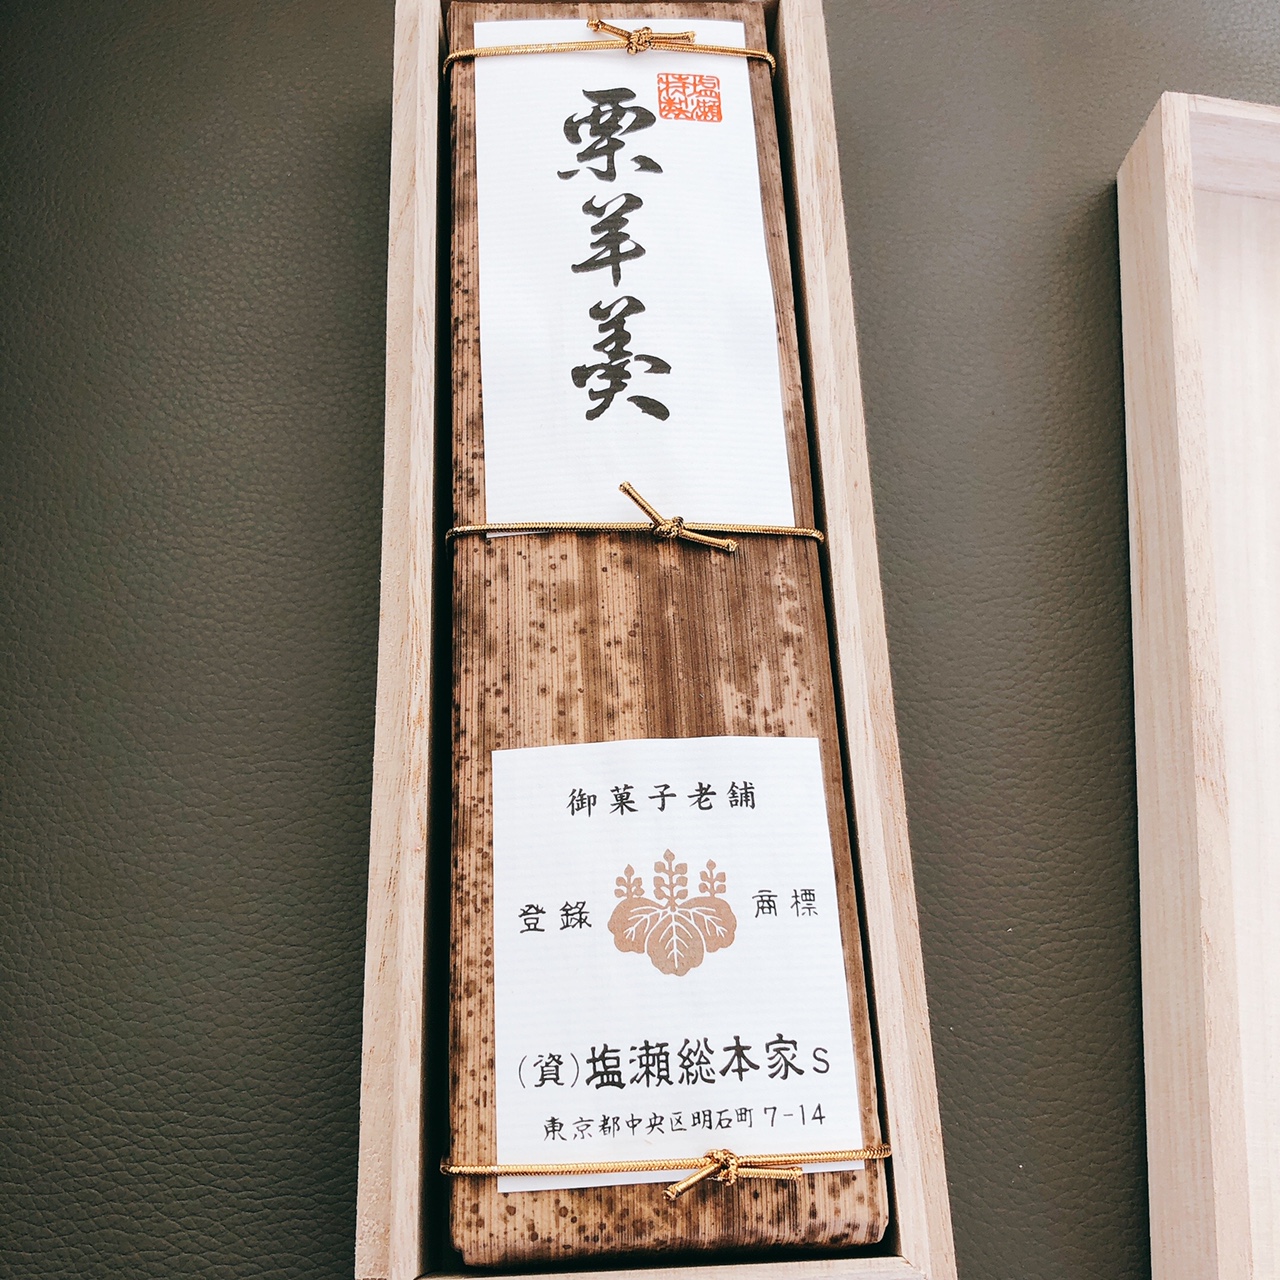 竹皮の包装が高級感をかもし出しています。塩瀬のお菓子は織田信長や豊臣秀吉、徳川家康にも献上されたそう。